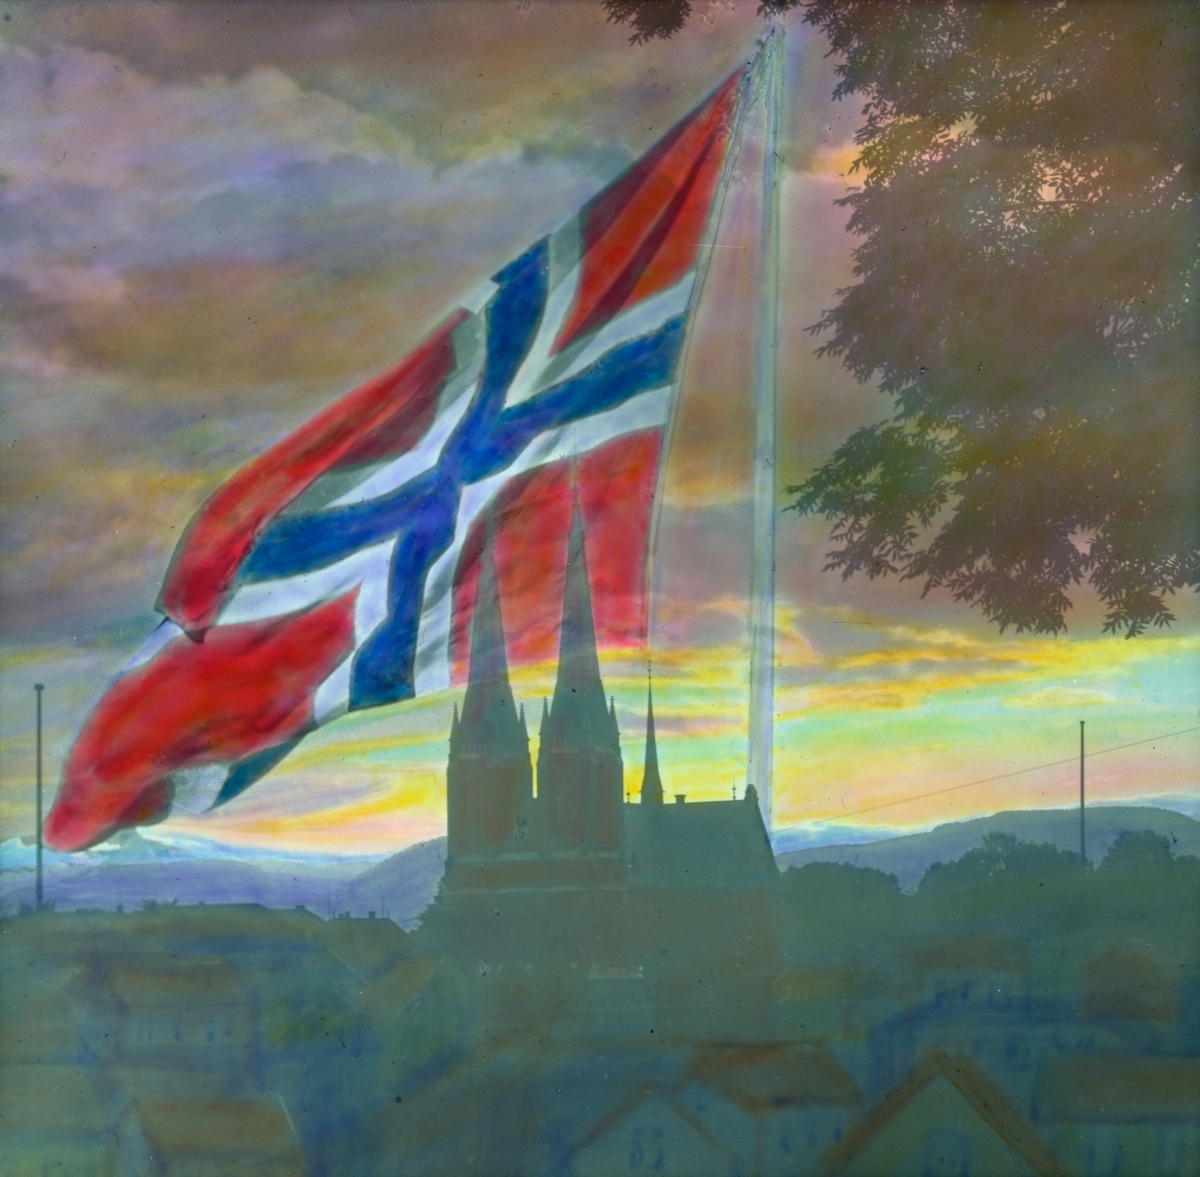 Håndkolorert dias. Utsyn over Skien og Skien kirke. Et stort norskt flagg, heist på en flaggstang, er malt over det mørke bylandskapet og dekker store deler av himmelen, som er farget av solnedgang. Til høyre i forgrunnen ses grenene på et tre.